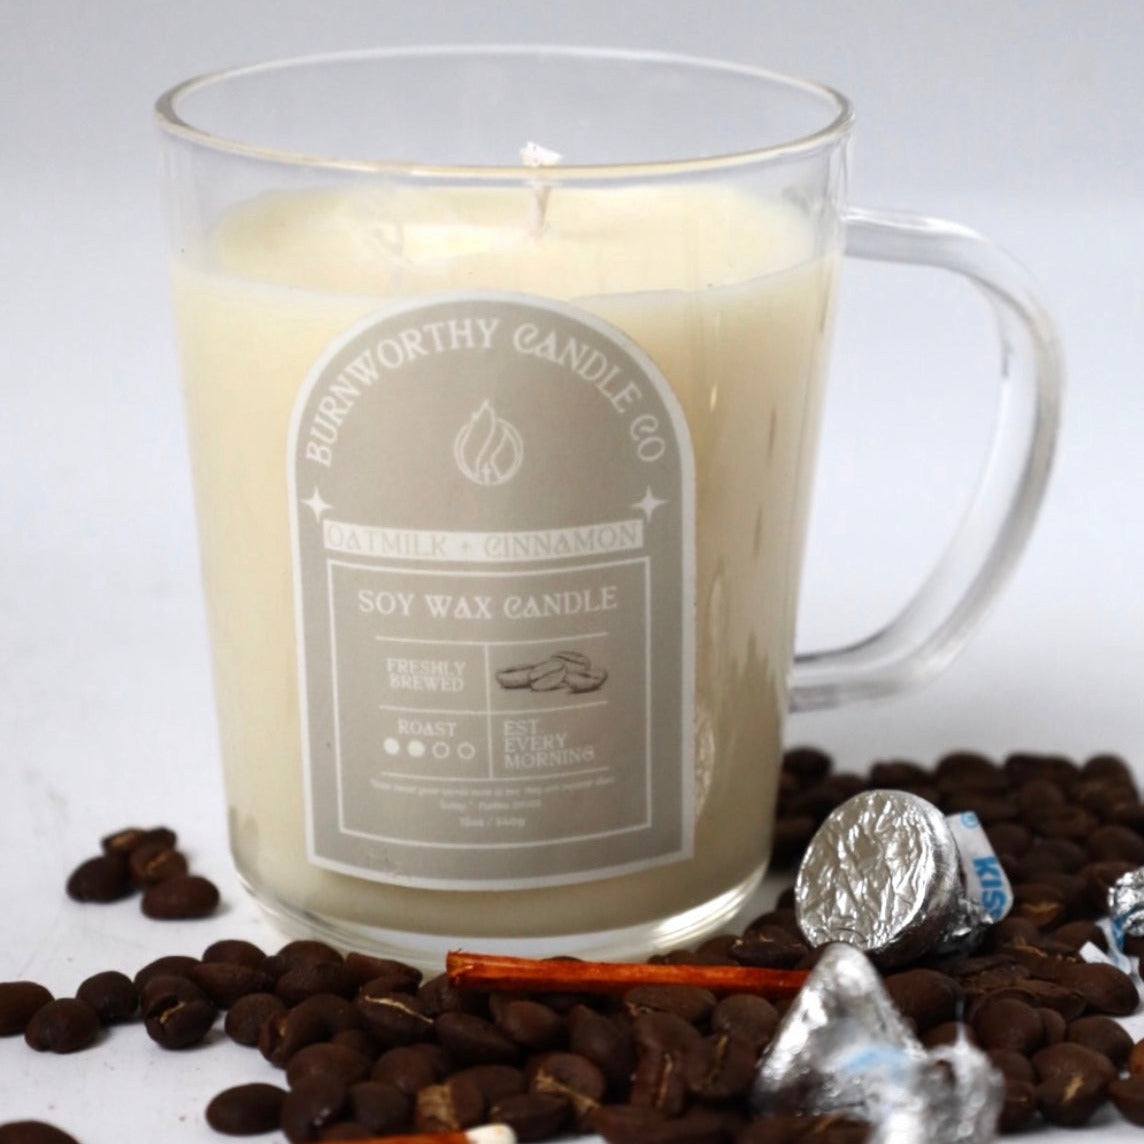 Oatmilk Cinnamon | BrewWorthy Collection | 12oz Coffee Mug Candle - BURNWORTHY CANDLE CO.